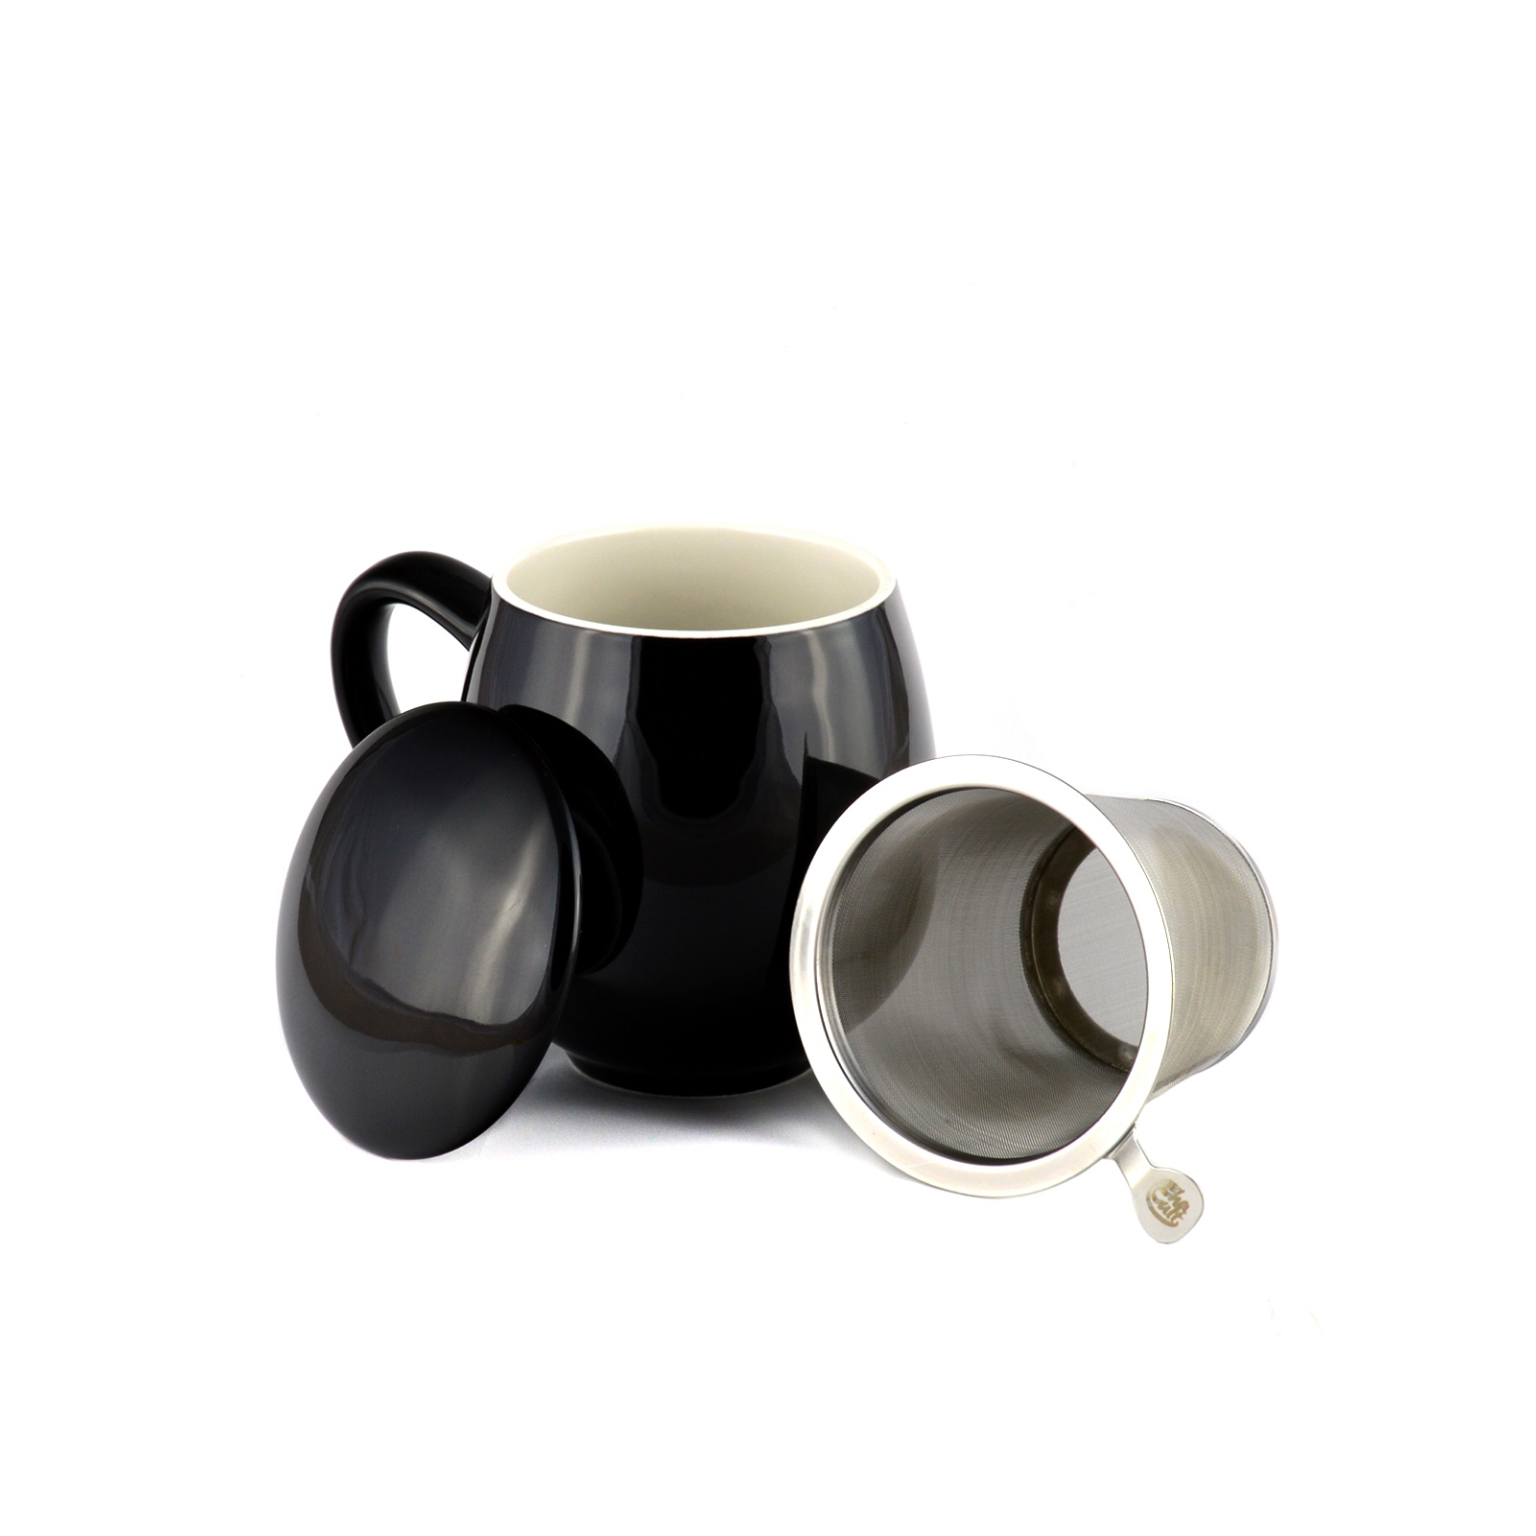 Taza Porcelana negra para Infusiones o Té (0.35 L), Filtro y Tapa